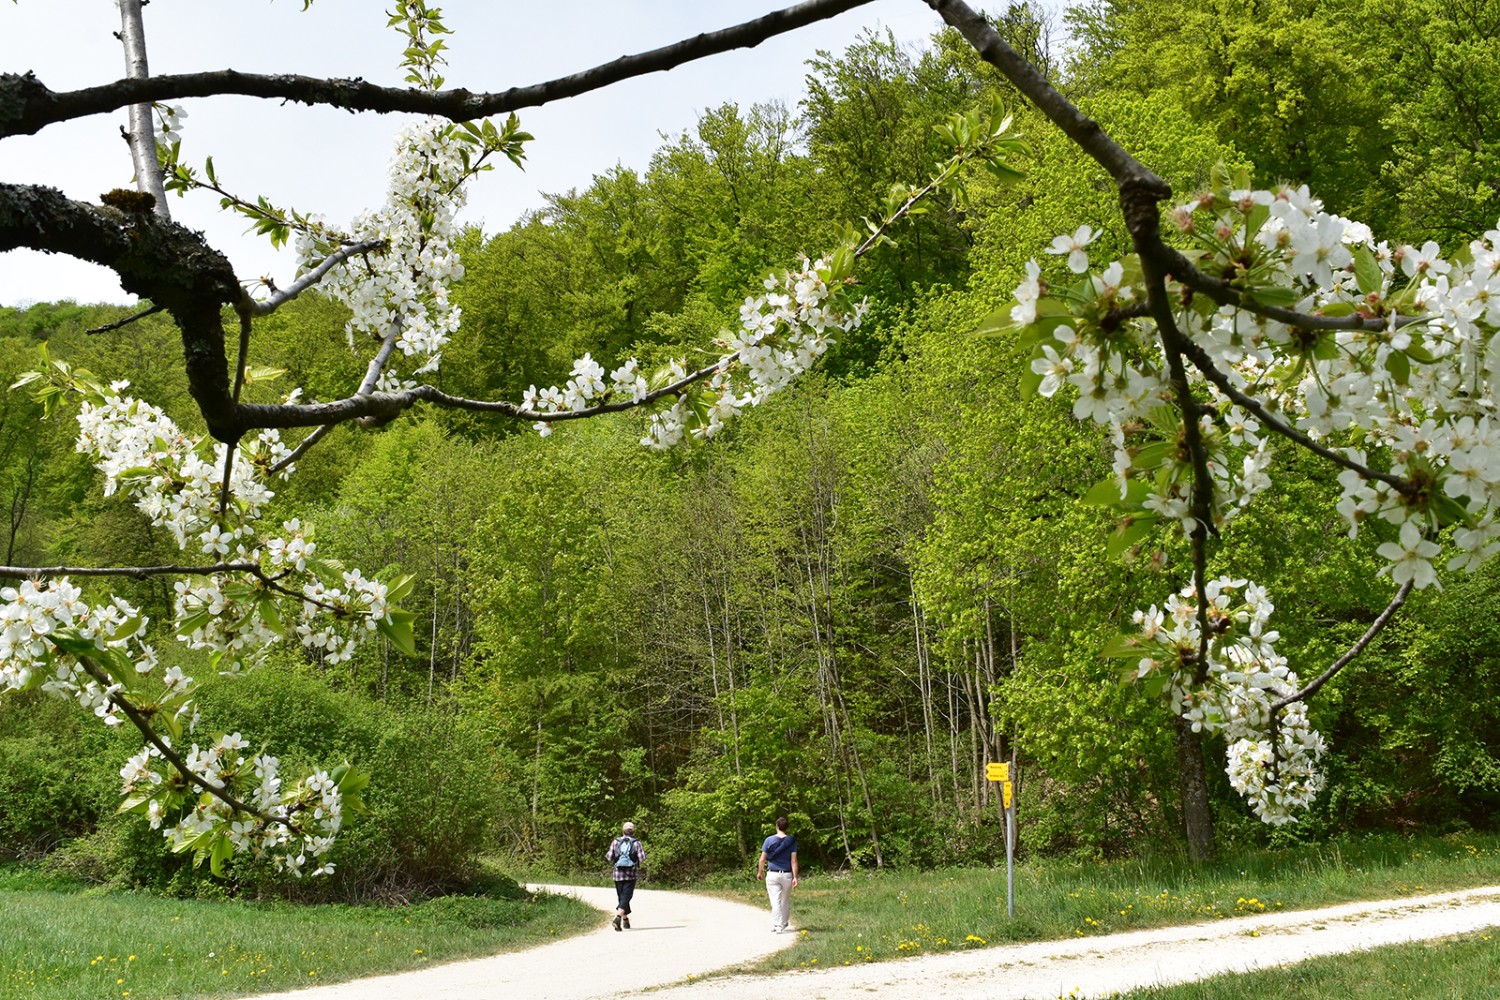 Une randonnée de printemps pour la vue et le goût. 
Photos: Nathalie Stöckli